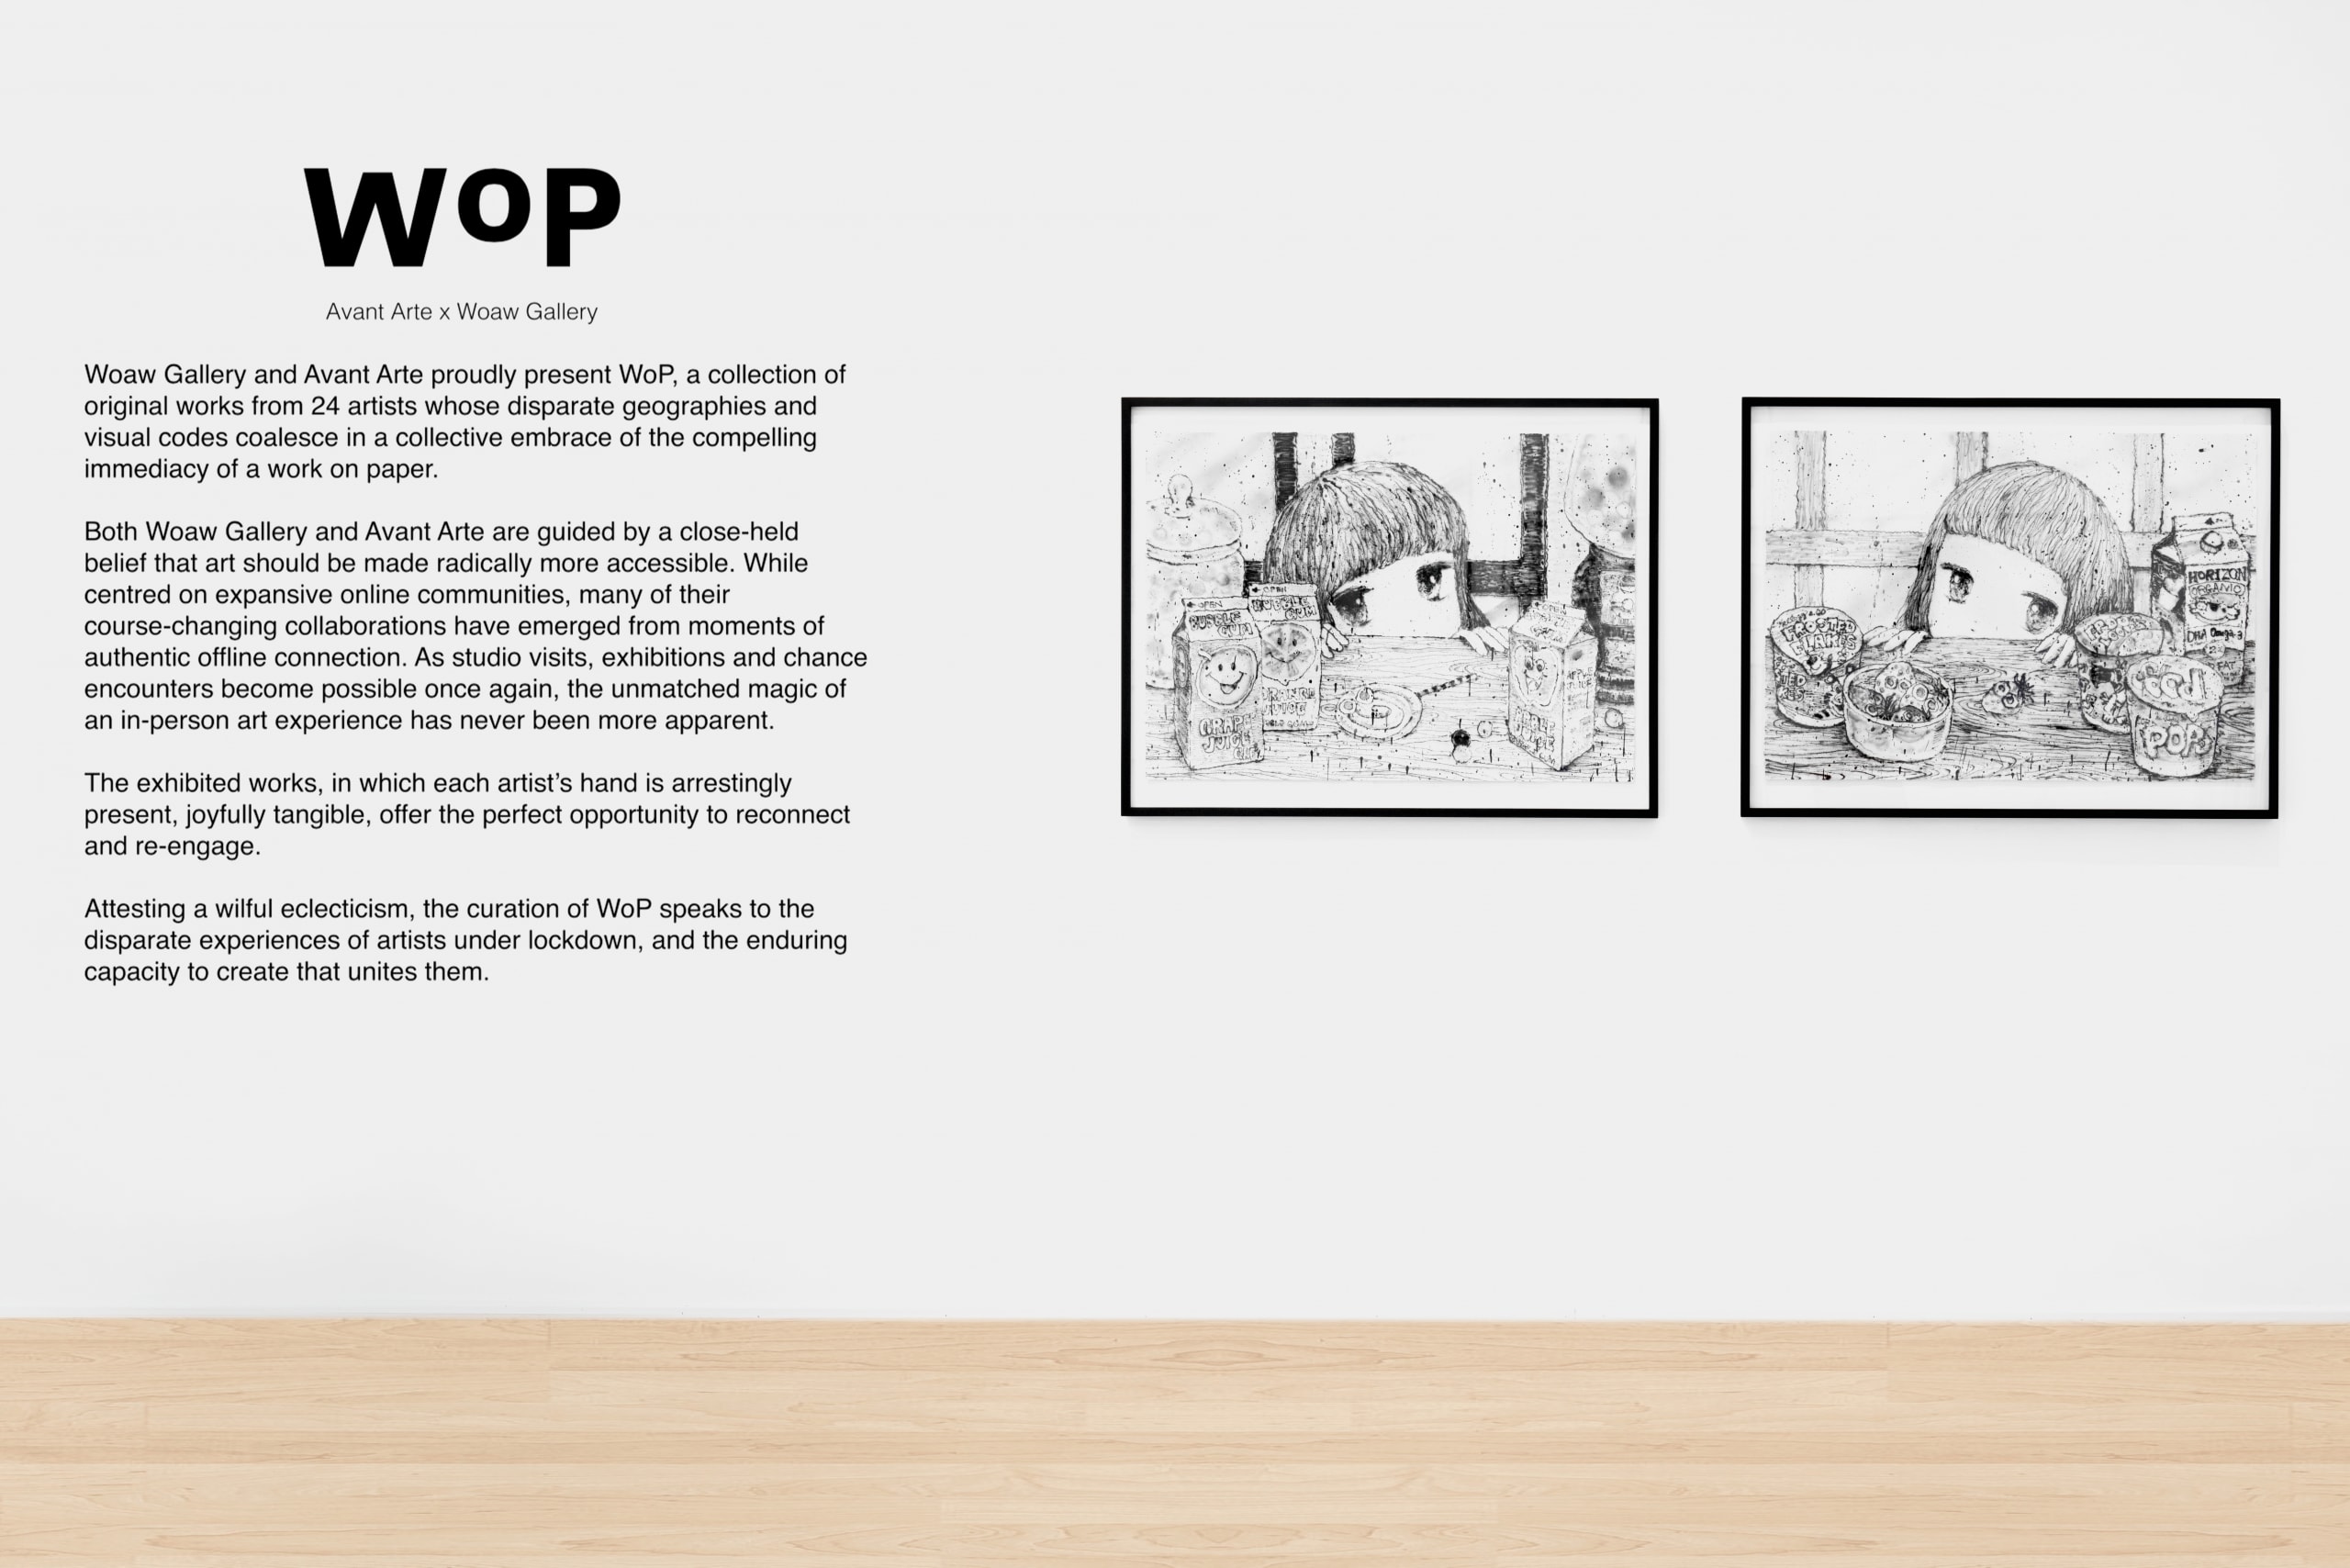 Woaw Gallery 携手 Avant Arte 举办《WoP：画纸上的艺术》展览